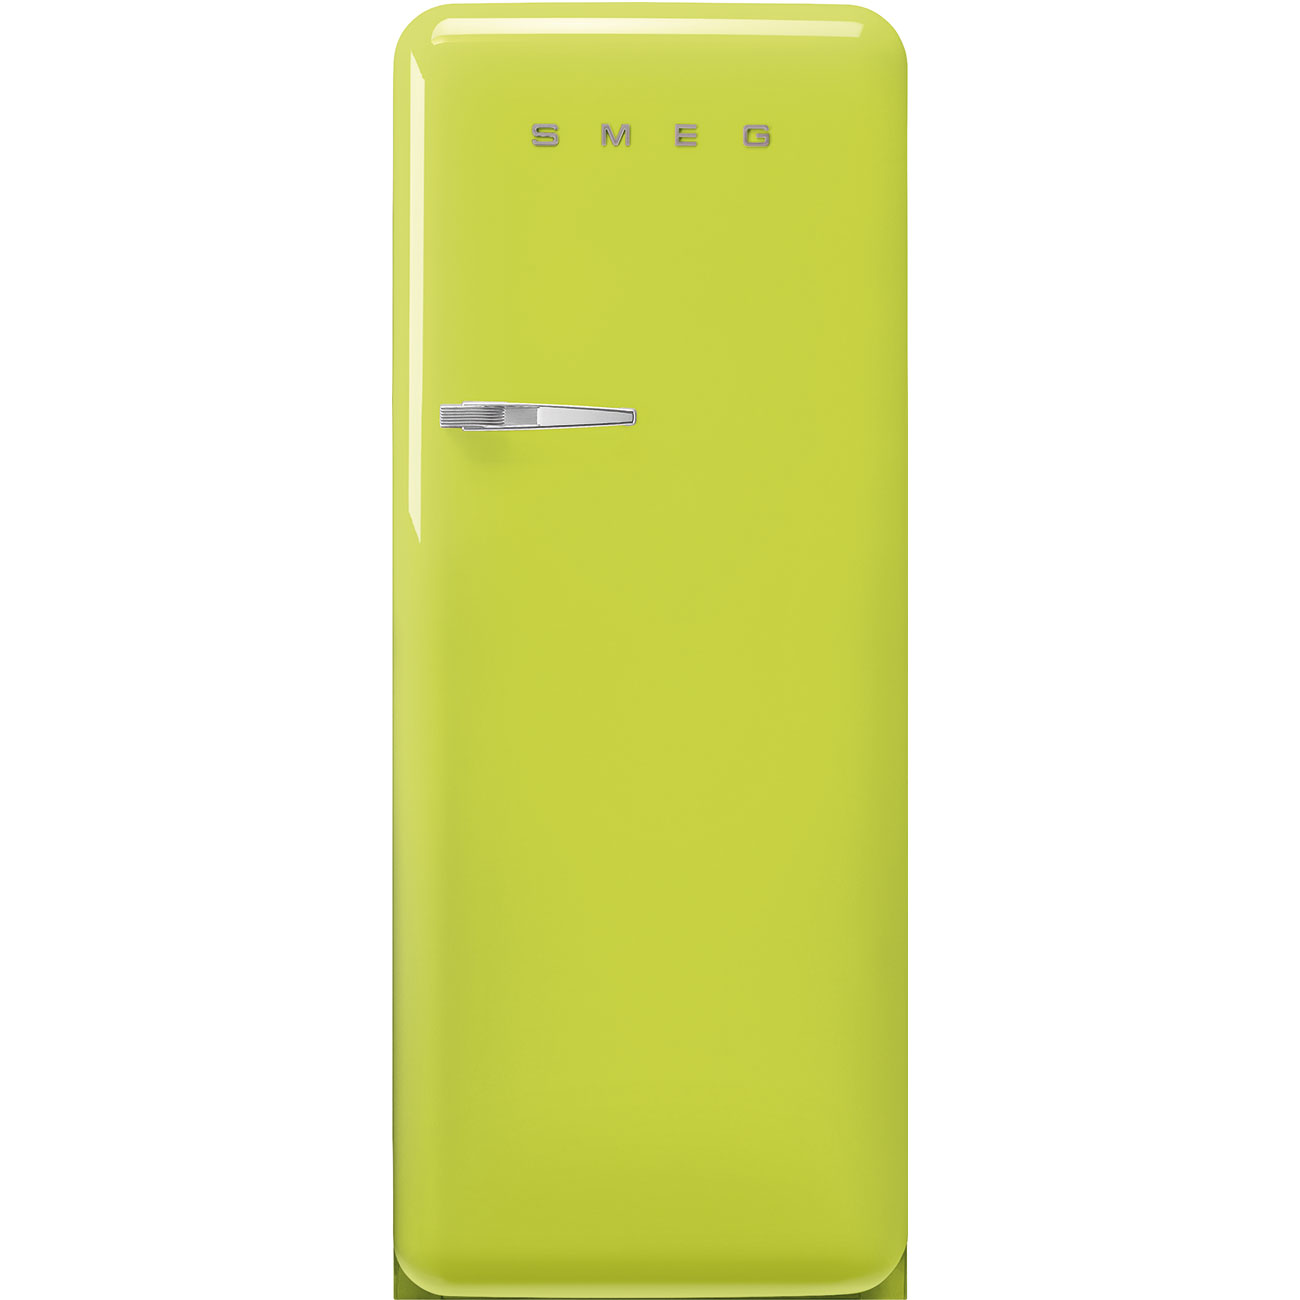 Lime green refrigerator - Smeg_1